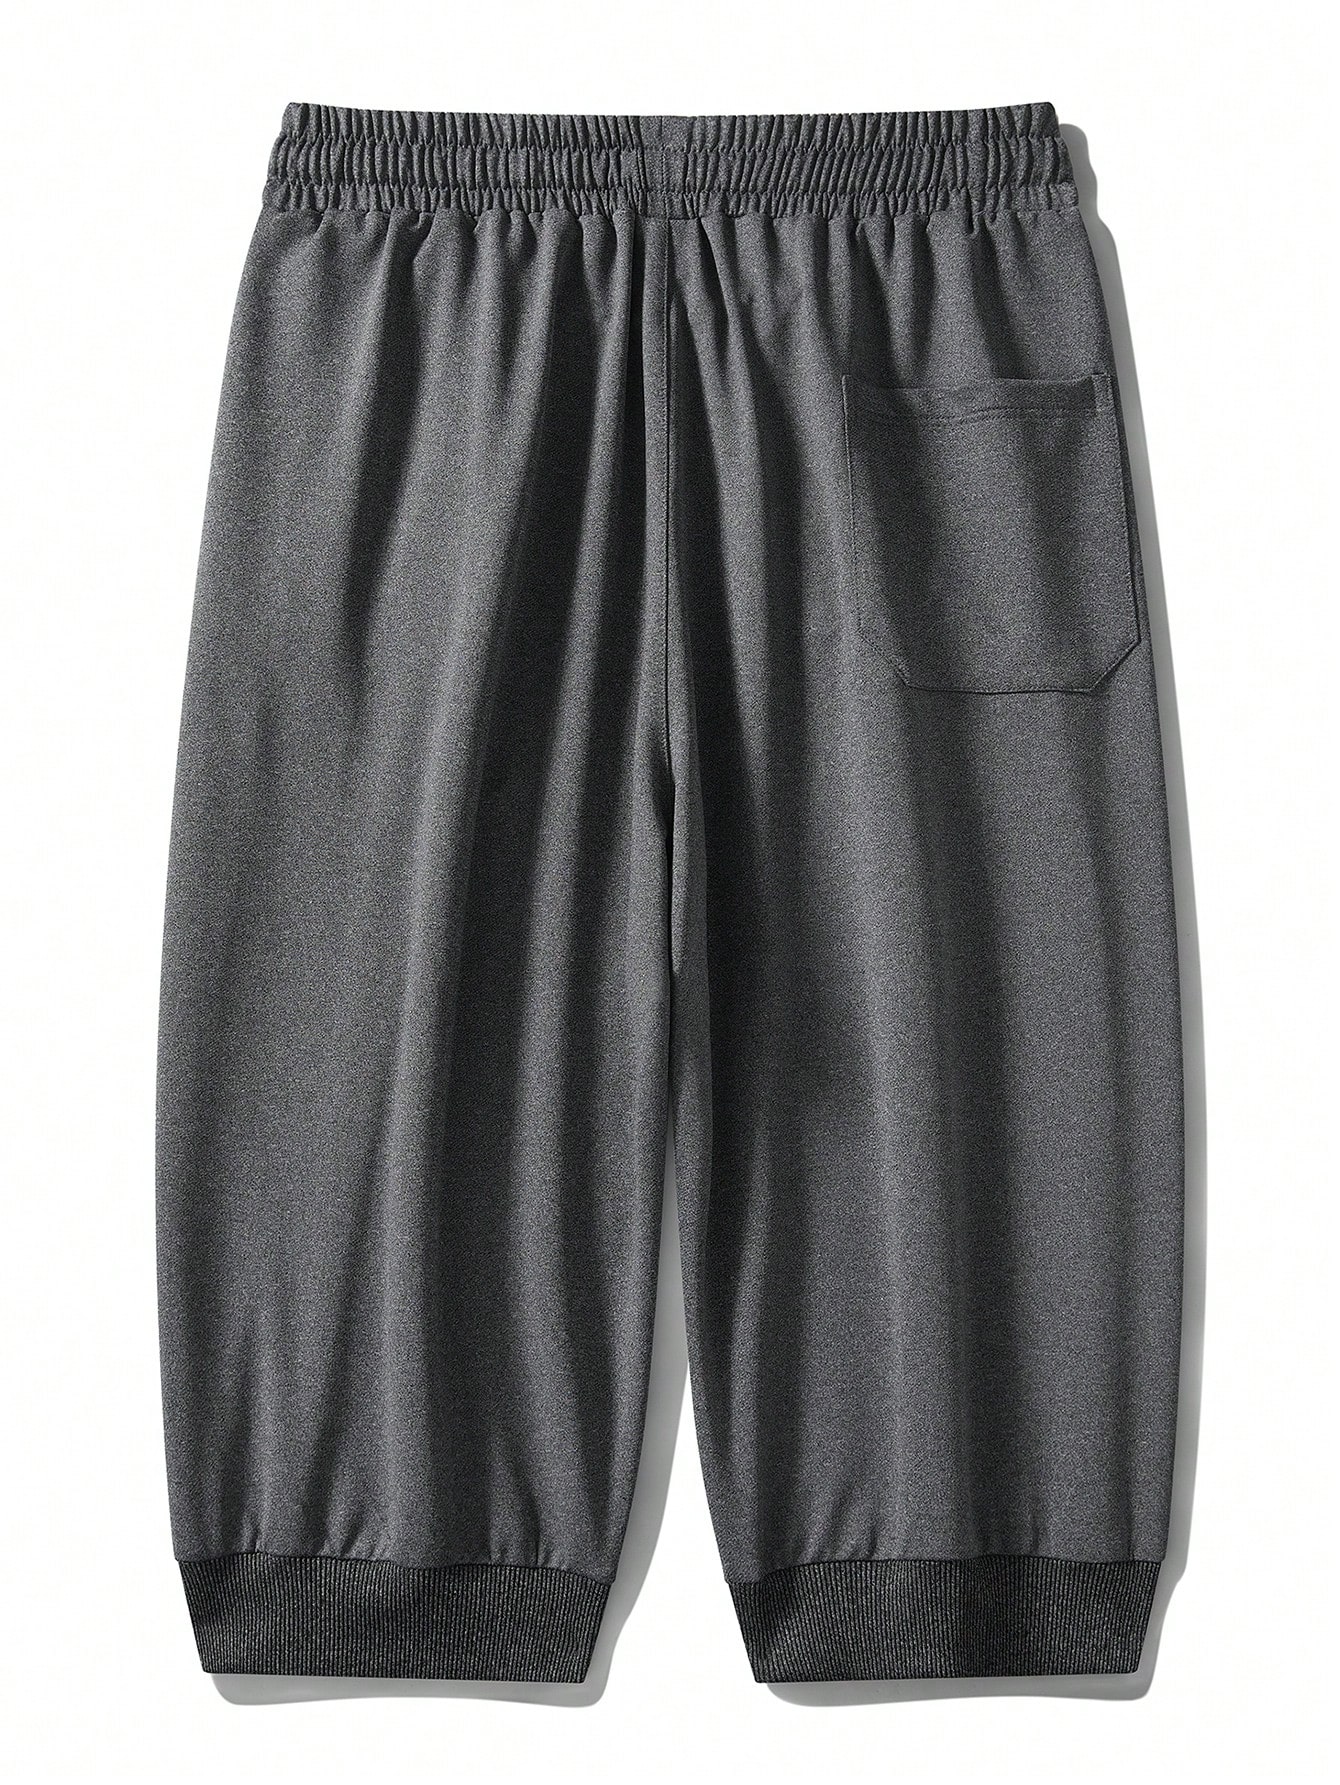 Мужские шорты свободного кроя больших размеров длиной 7/8 на лето, темно-серый цена и фото